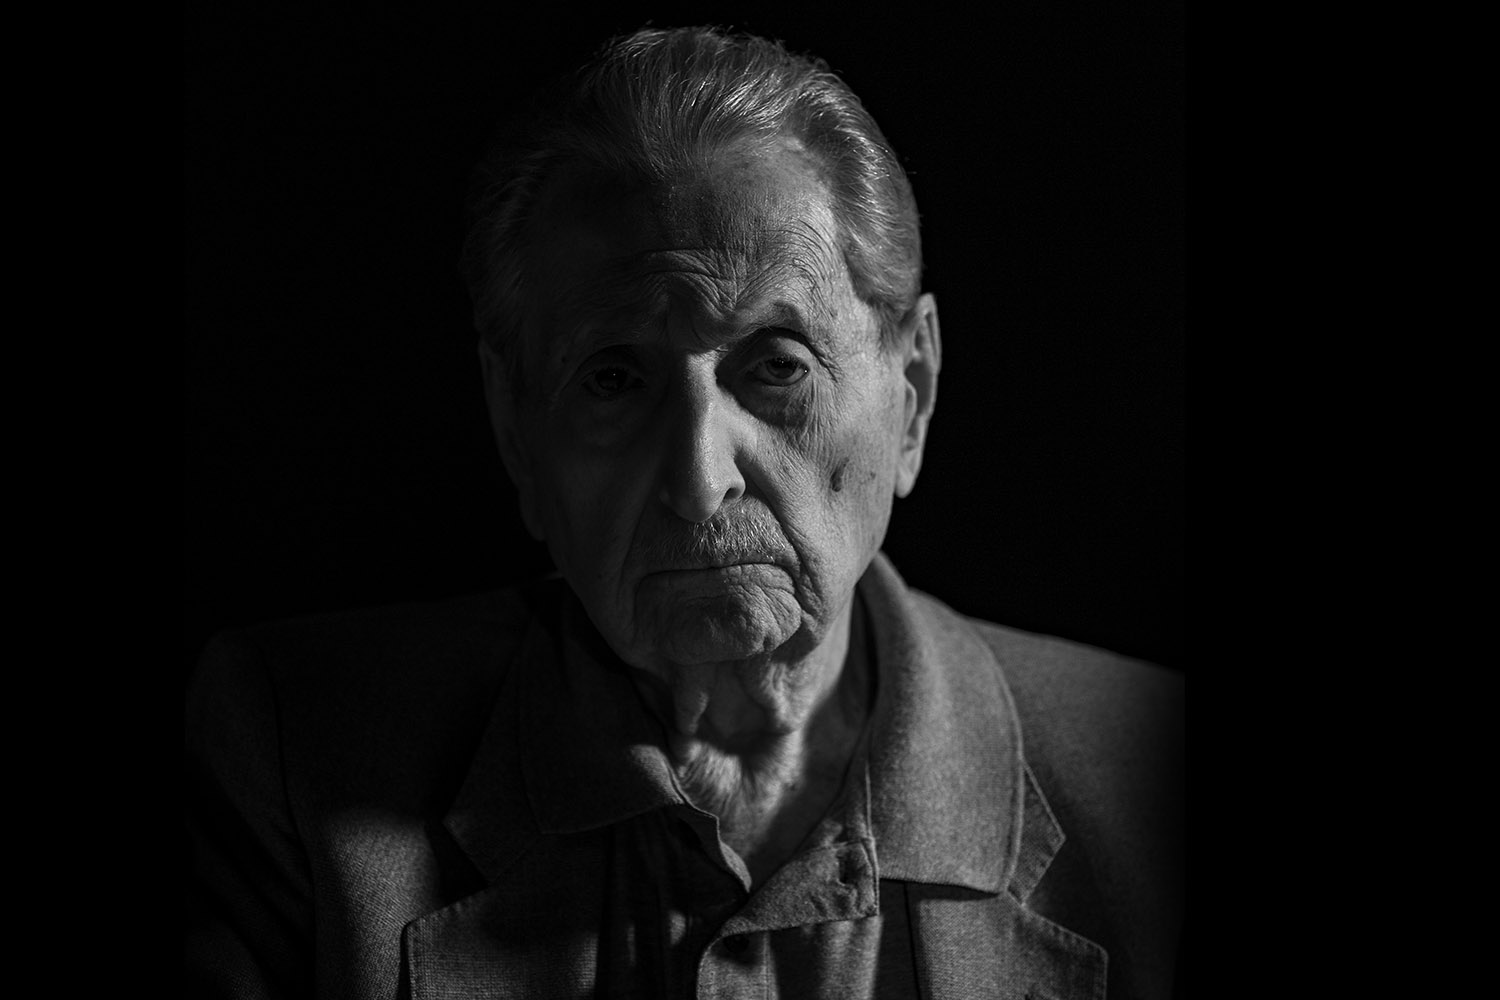 106歳のホロコースト生存者が語るドキュメンタリー映画『ユダヤ人の私』